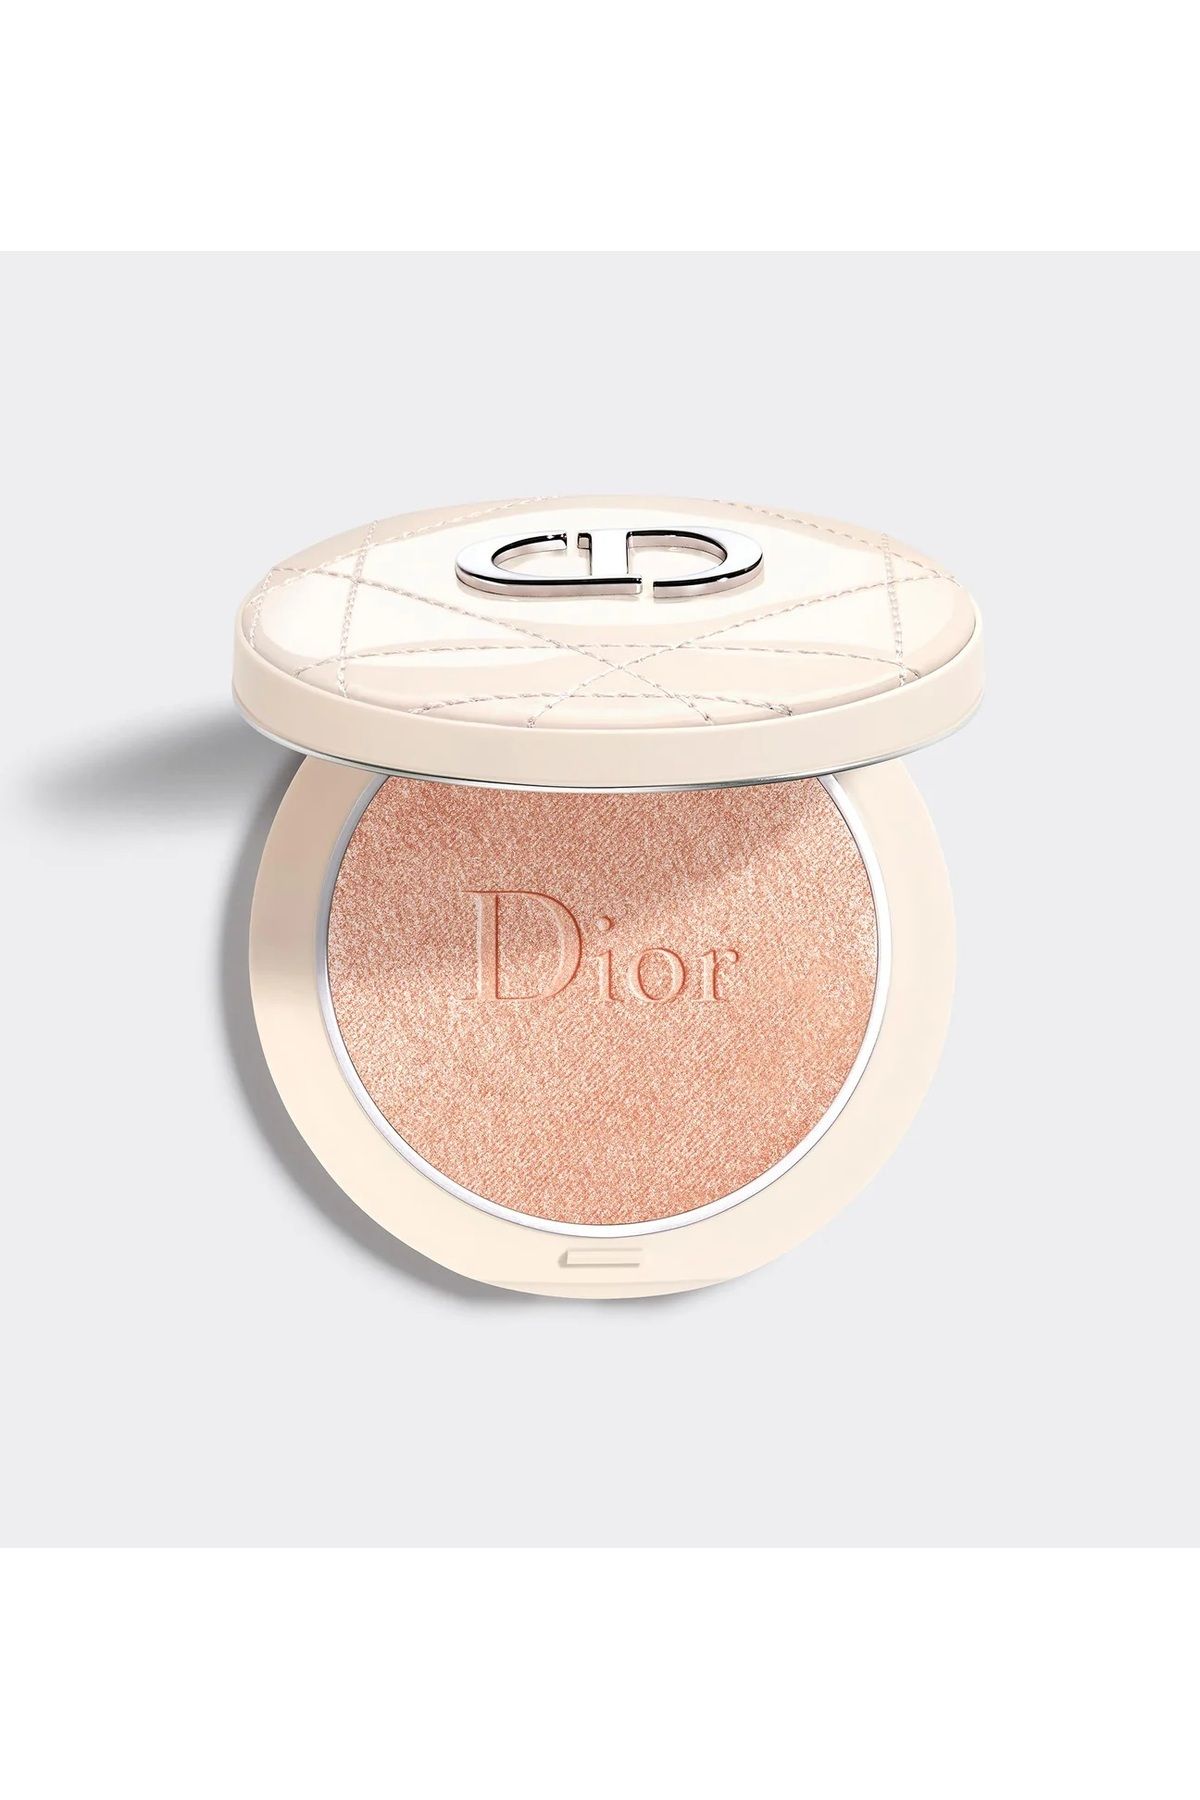 Dior Forever Couture Luminizer Highlighter - Nemlendirici Doğal Pigmentli Işıltılı Aydınlatıcı Pudra 6G